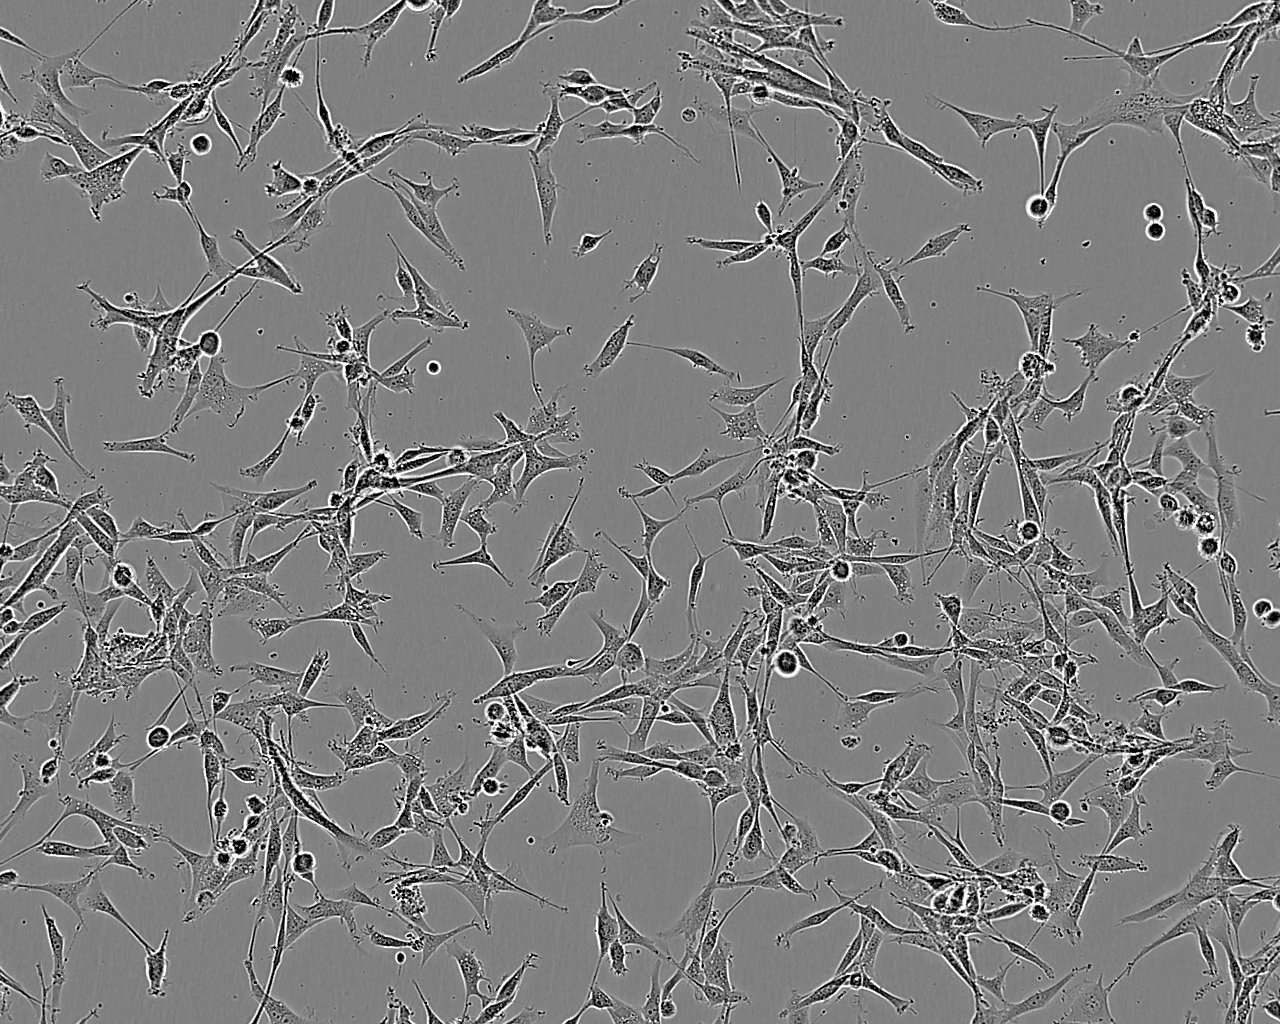 NCI-H2108 epithelioid cells人肺癌细胞系,NCI-H2108 epithelioid cells